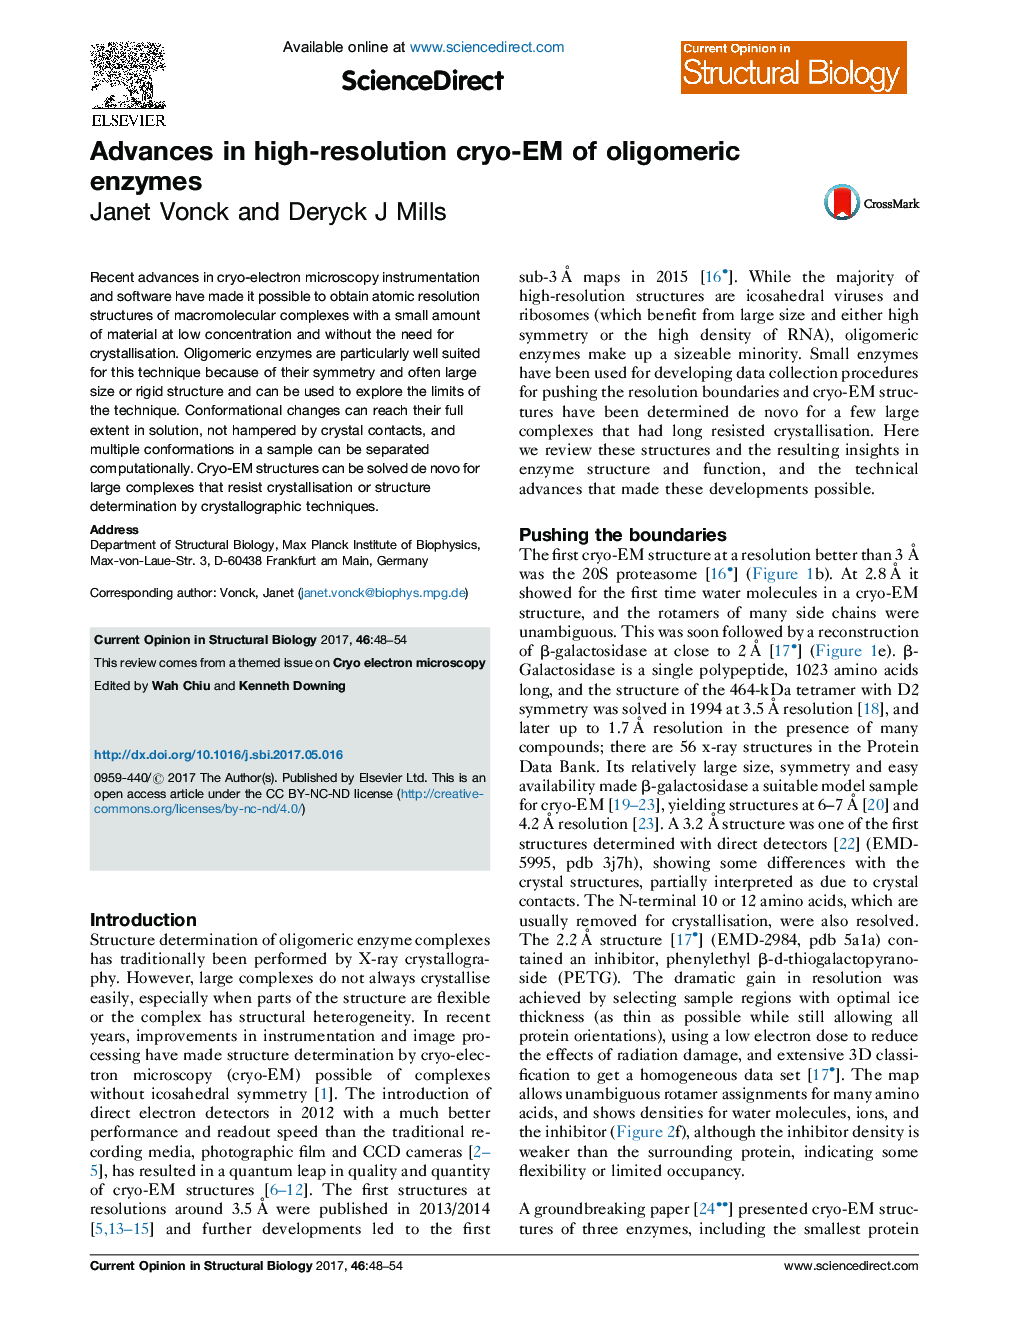 Advances in high-resolution cryo-EM of oligomeric enzymes